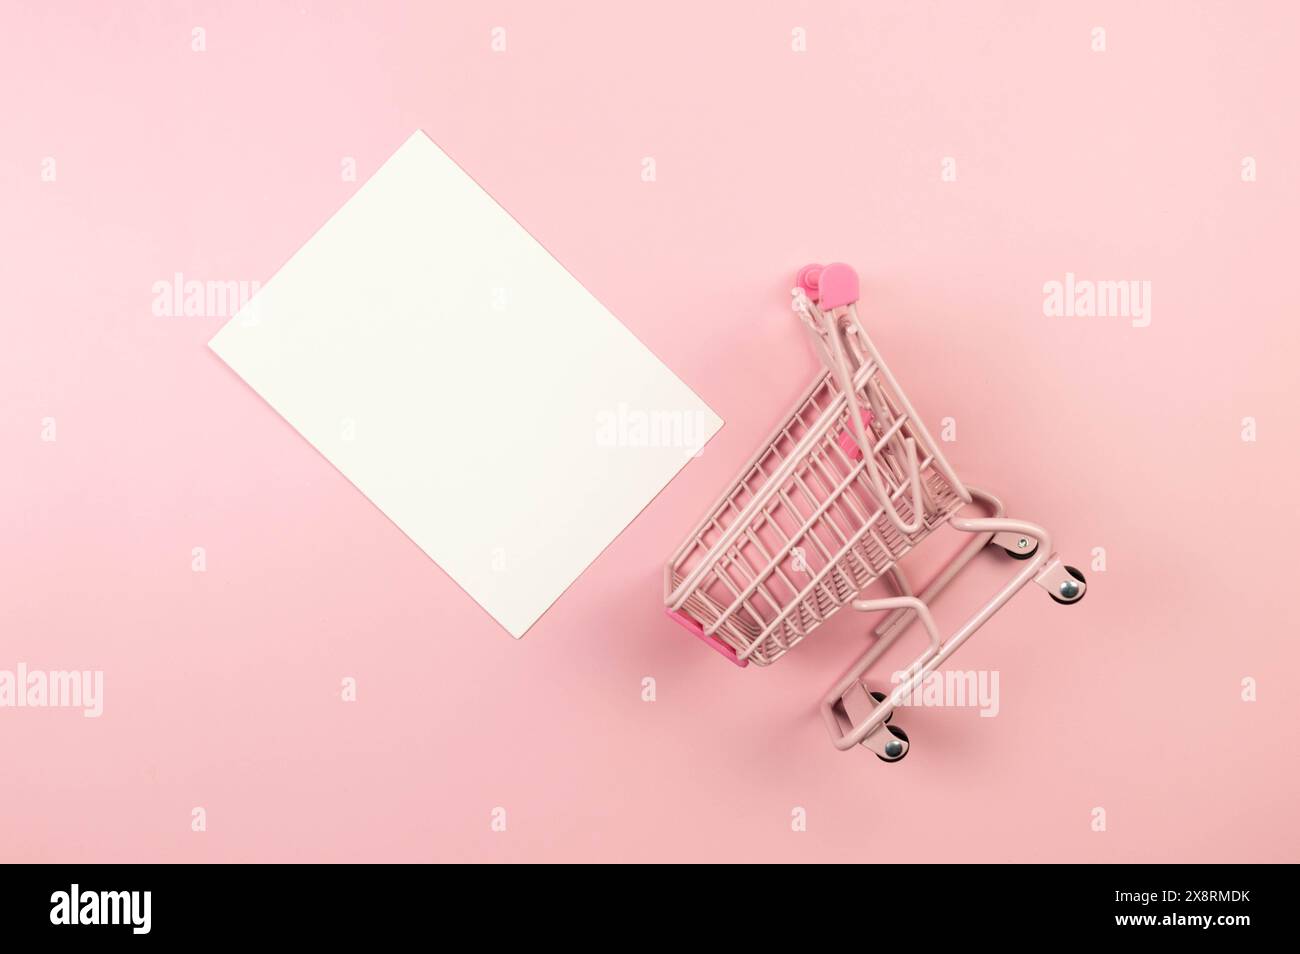 Vista dall'alto del carrello dello shopping rosa su sfondo rosa. Carta da parati per lo shopping creativa, carta bianca, vendita. Copia spazio, disposizione piatta. Foto Stock